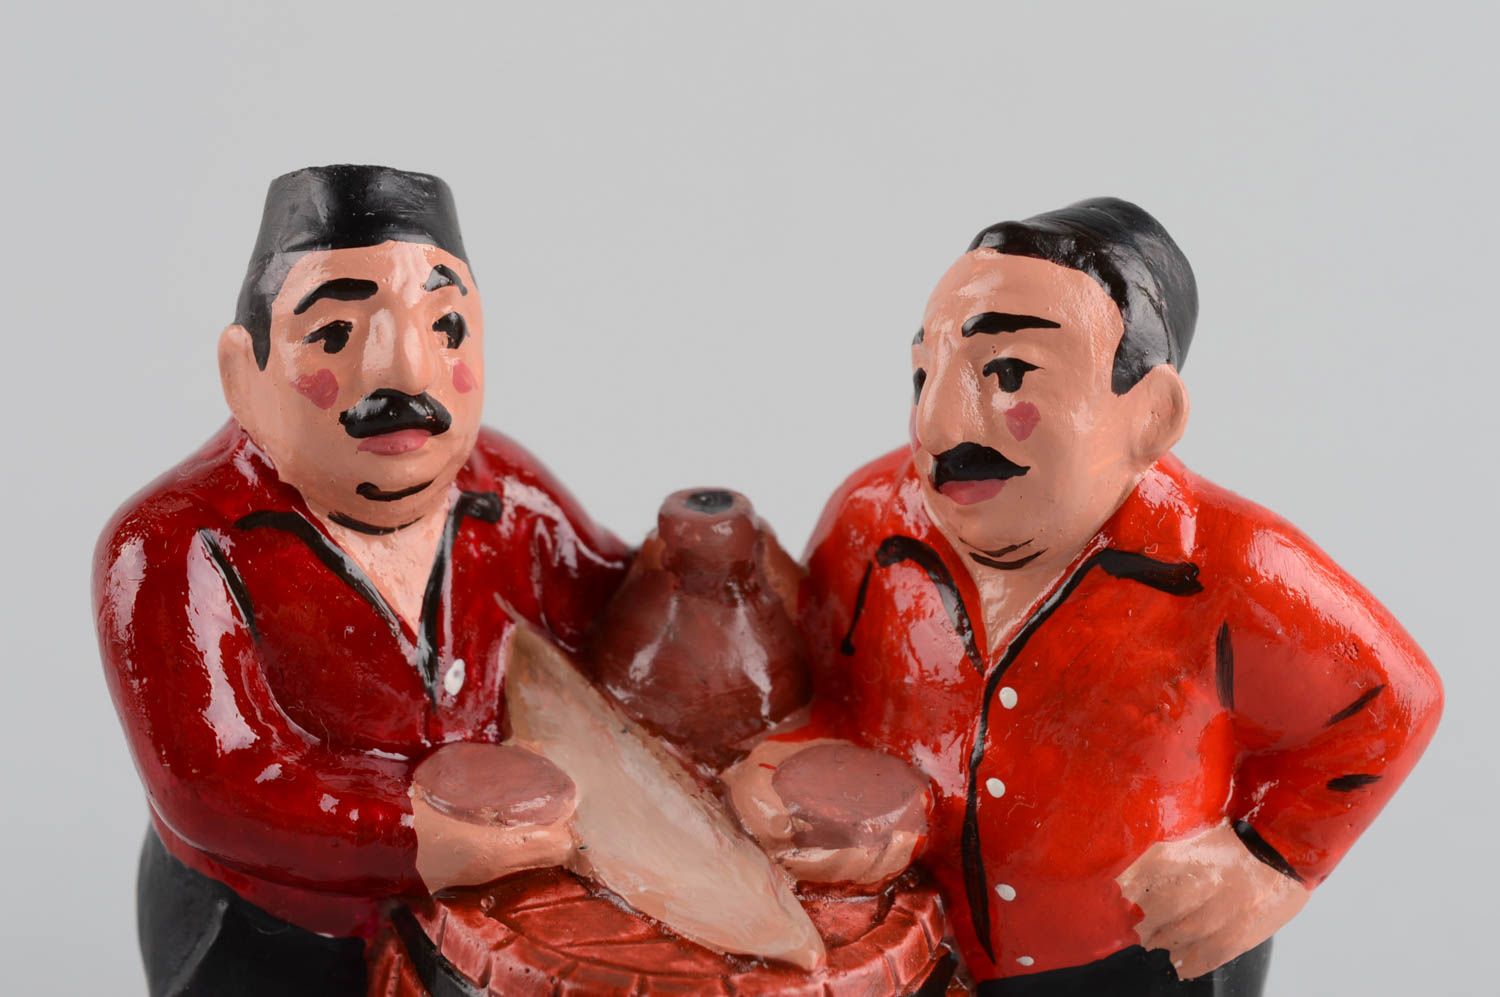 Гипсовая статуэтка в виде двух мужчин смешная небольшая цветная ручной работы фото 4